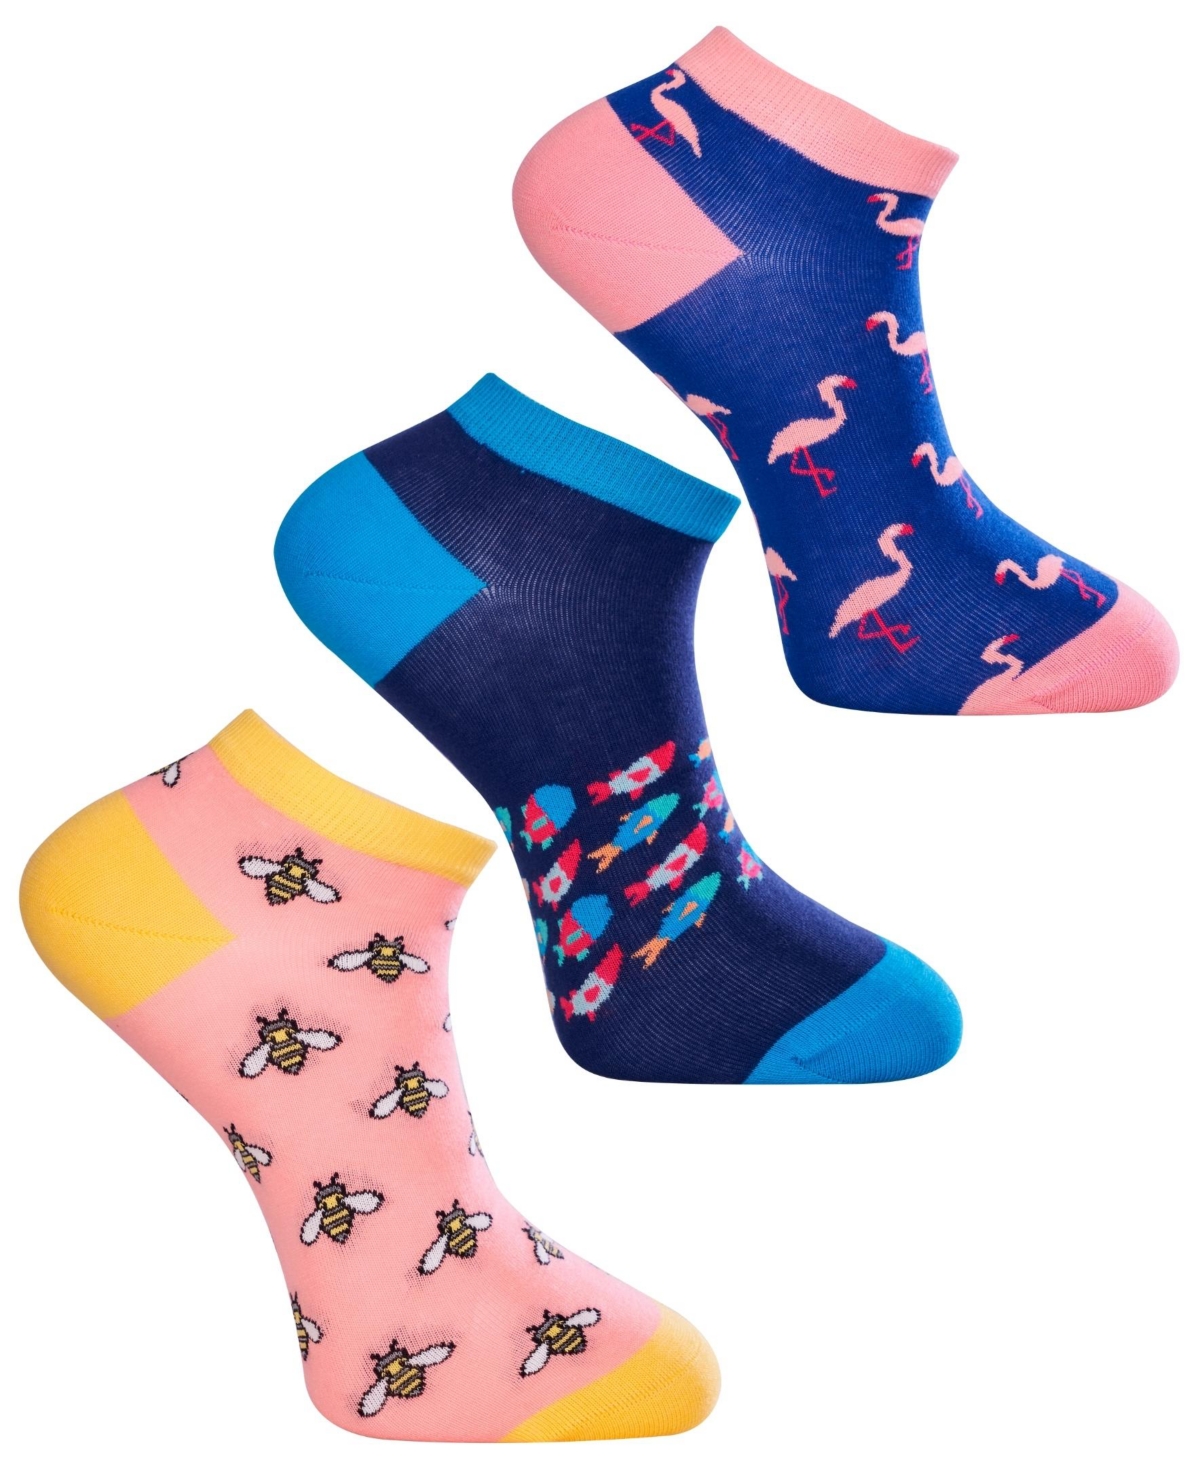 Love Sock Company Mens Novelty Ankle Socks, Pack of 3